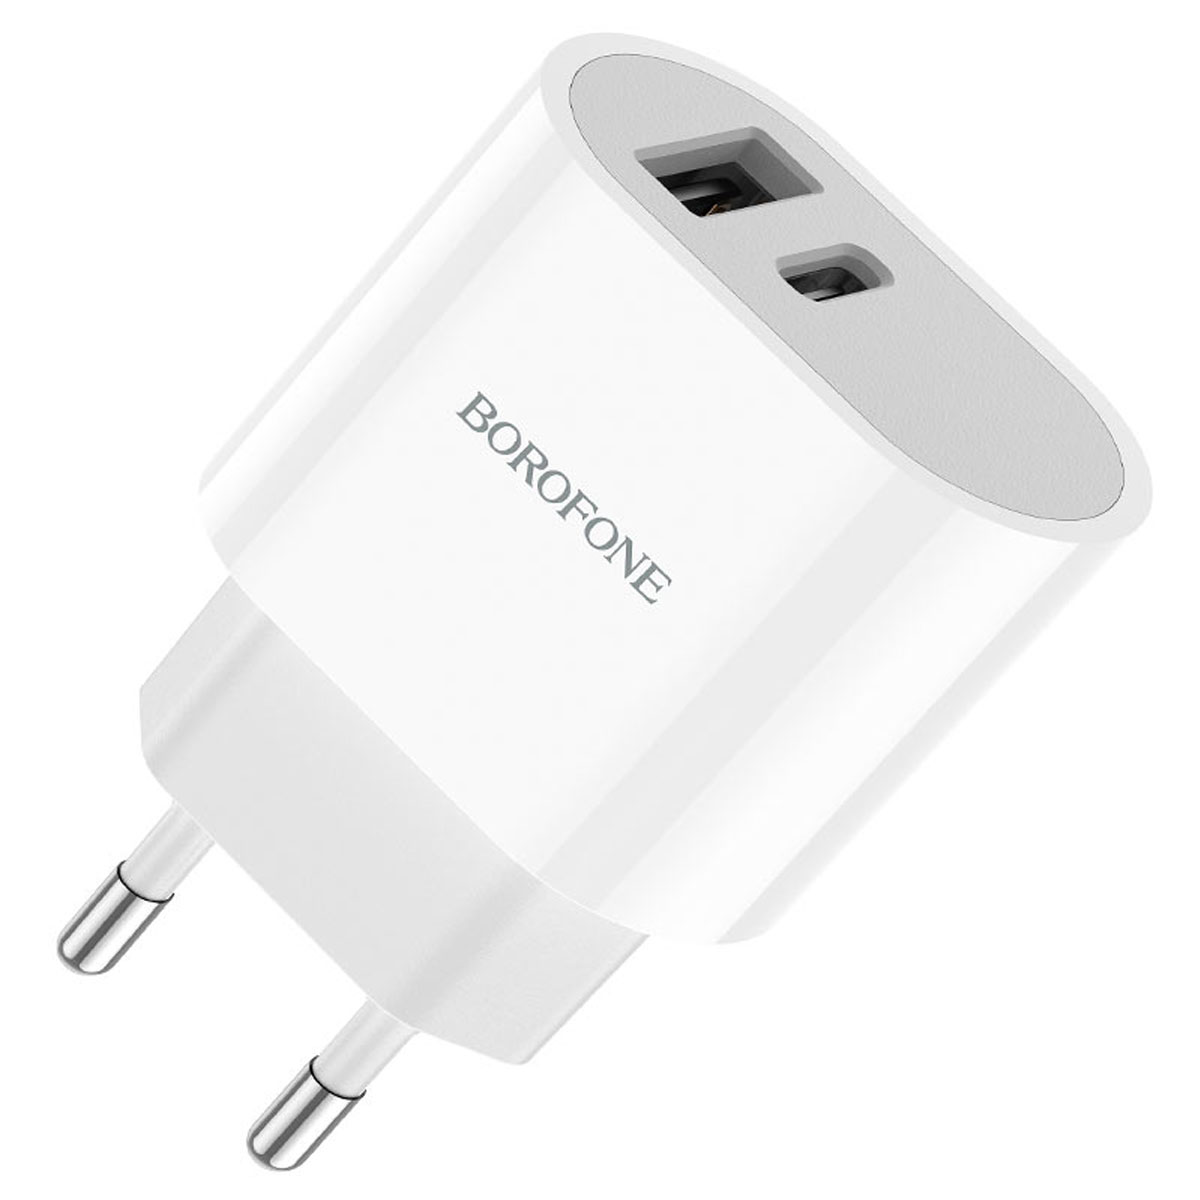 СЗУ (Сетевое зарядное устройство) BOROFONE BA62A Wiseacre, 12W, 2.4A, 1 USB, 1 USB Type C, цвет белый